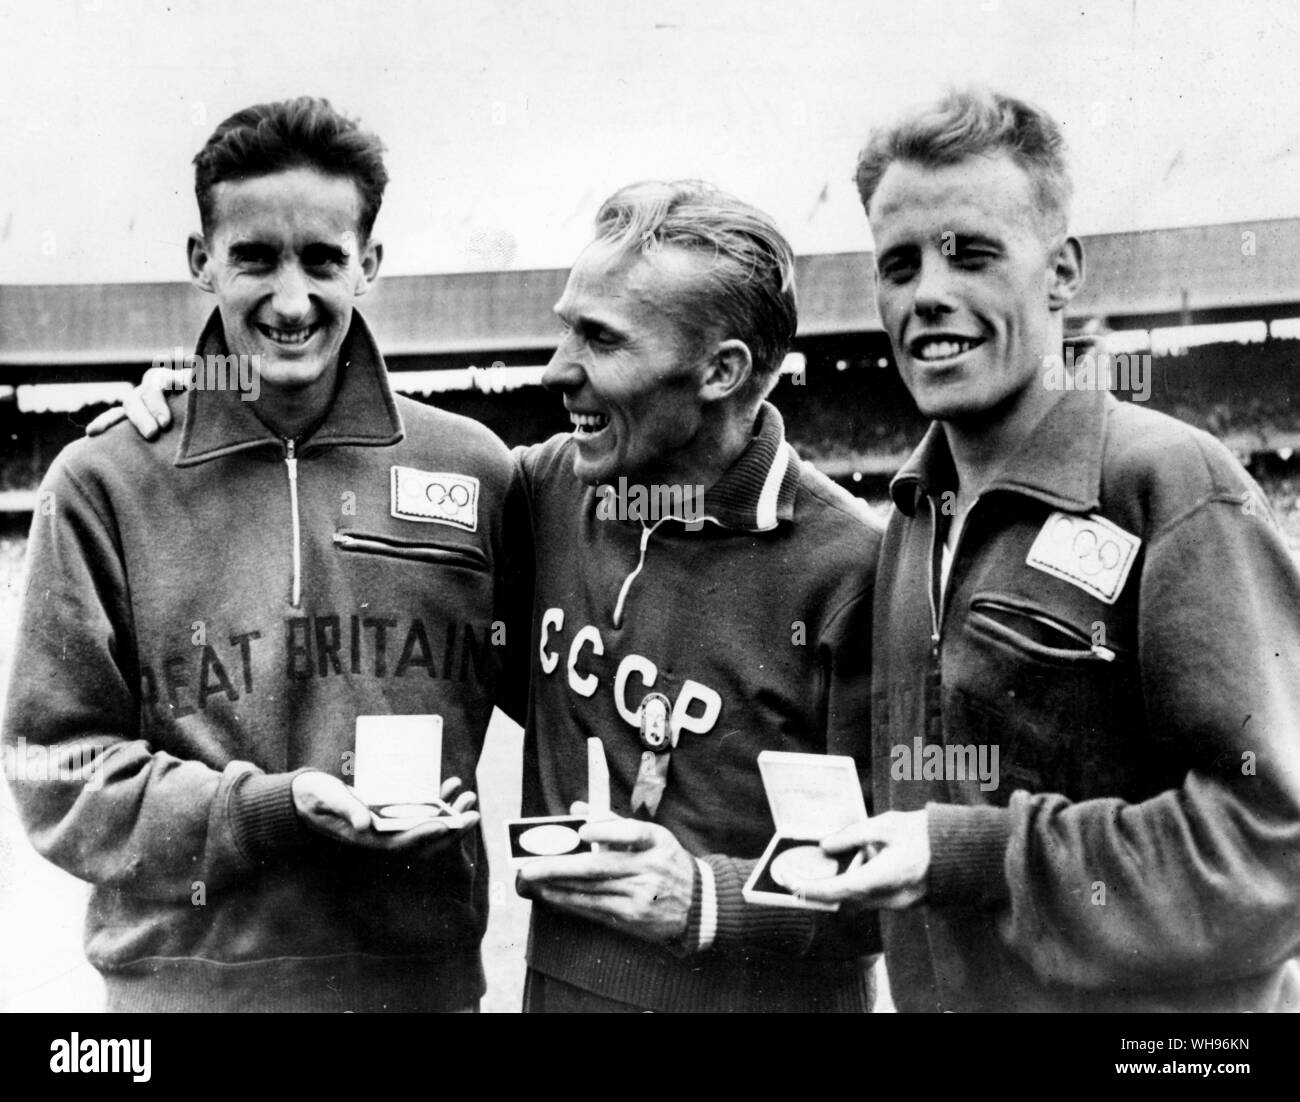 Aus., Melbourne, Olimpiadi, 1956: Valdimir Kuts (centro, URSS) con la sua medaglia d'oro per i suoi 5000 metri di vincere, con Gordon Pine (sinistra, Gran Bretagna) e Derek Ibbotson (destra, Gran Bretagna). Foto Stock